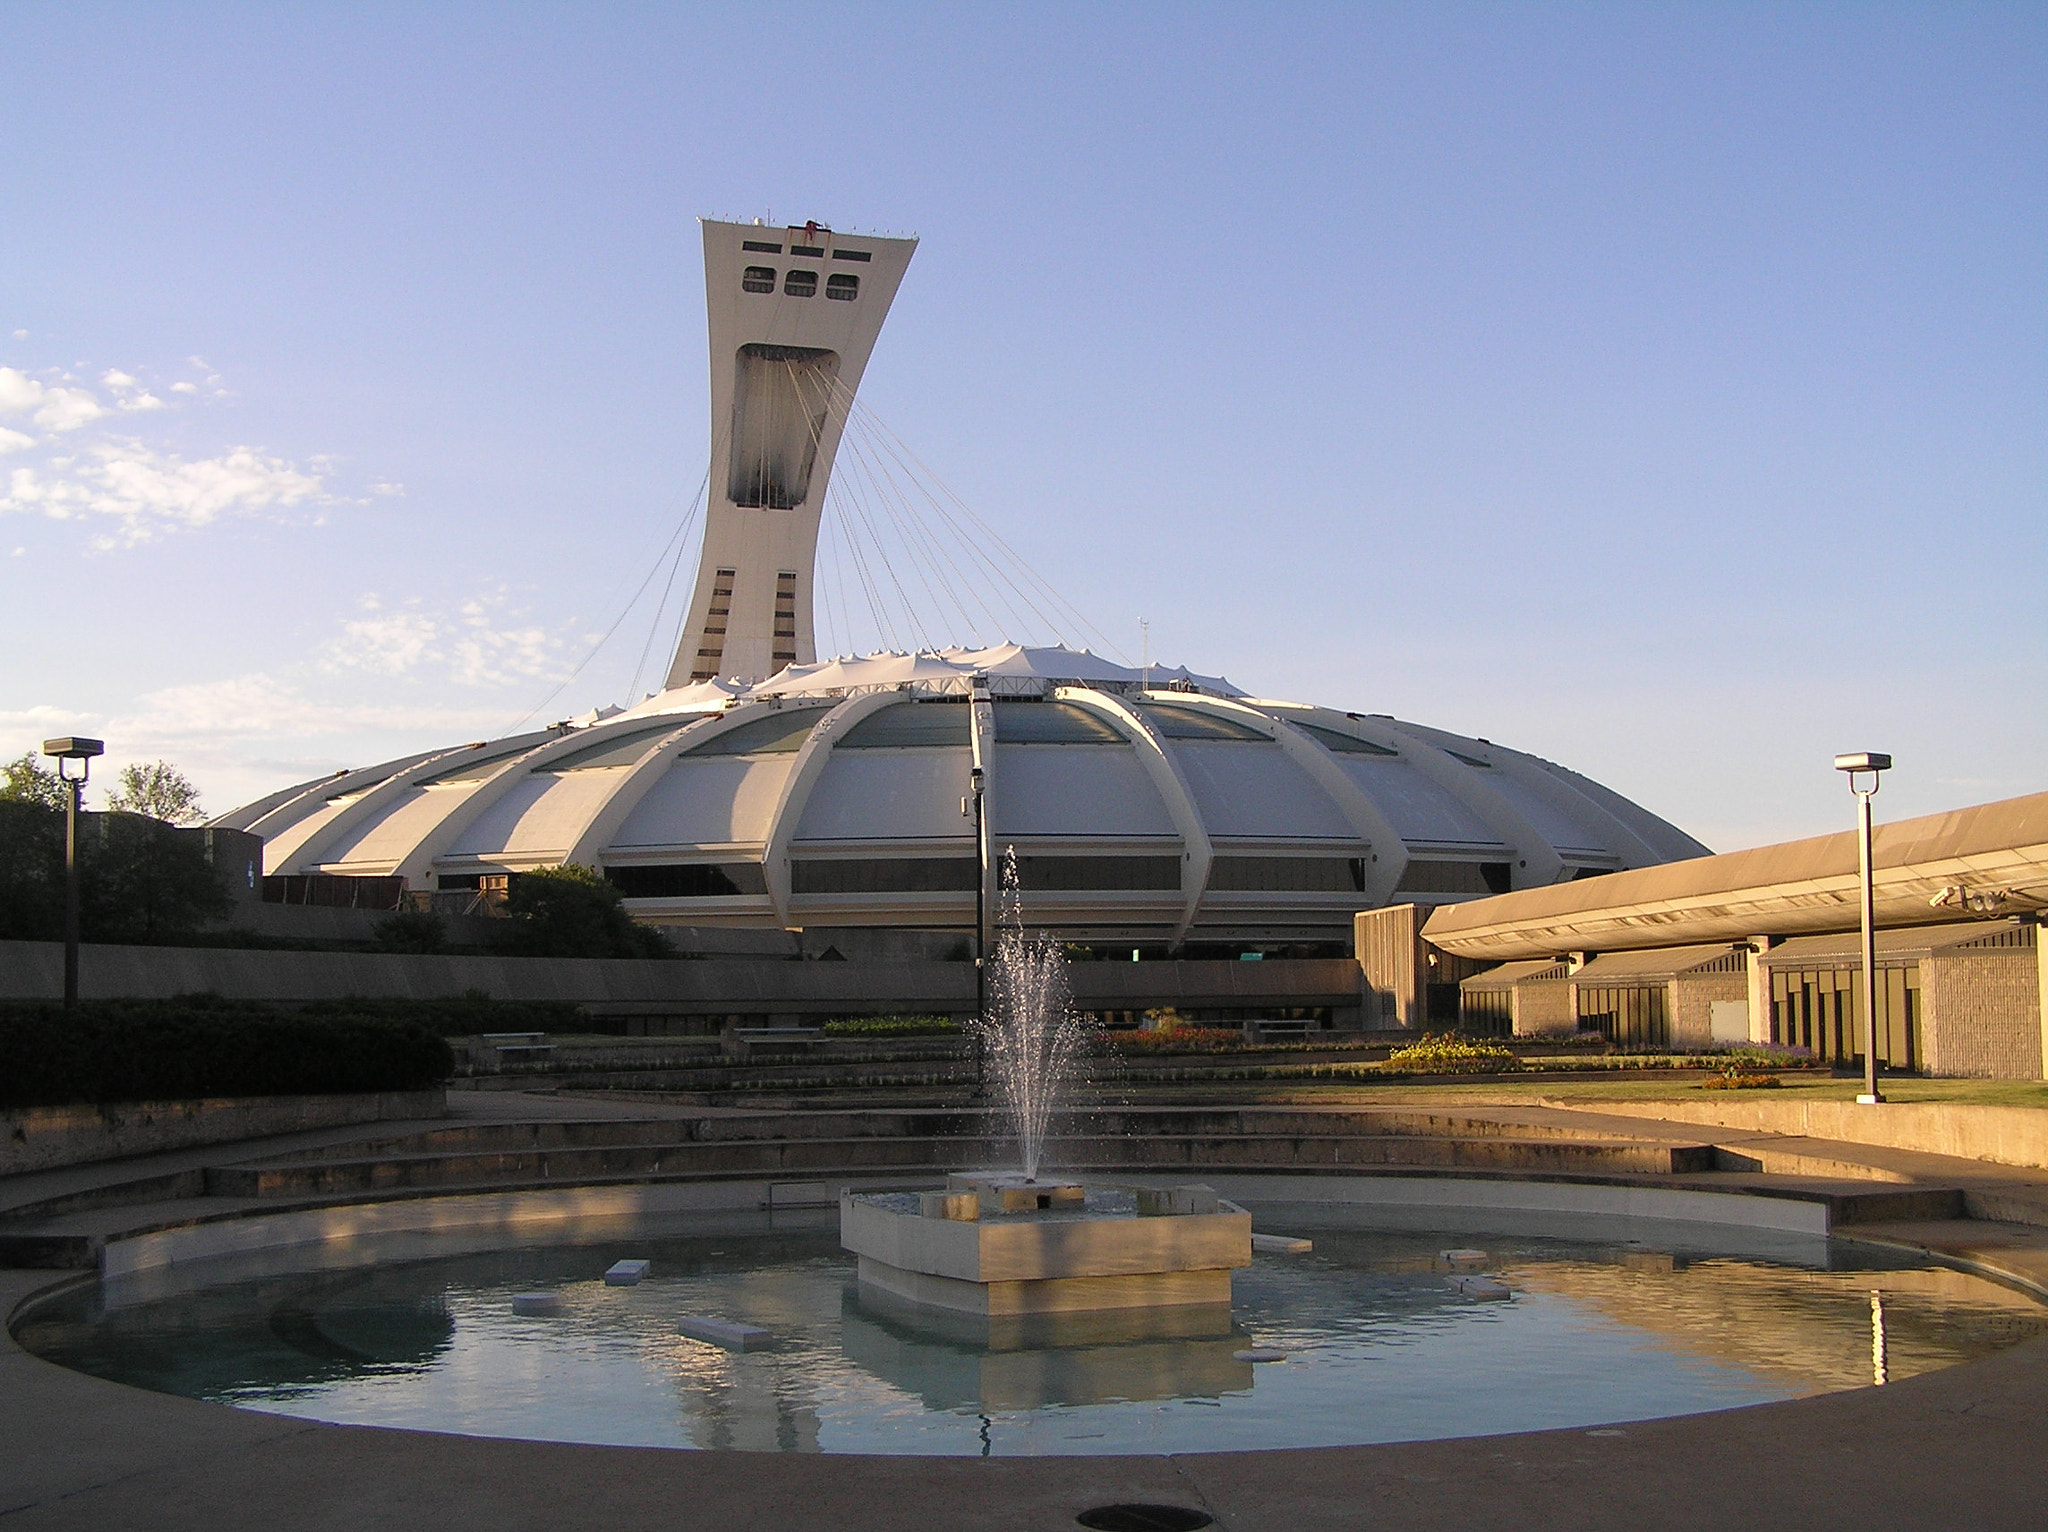 Olympus C770UZ sample photo. Olympic stadium from metro station photography